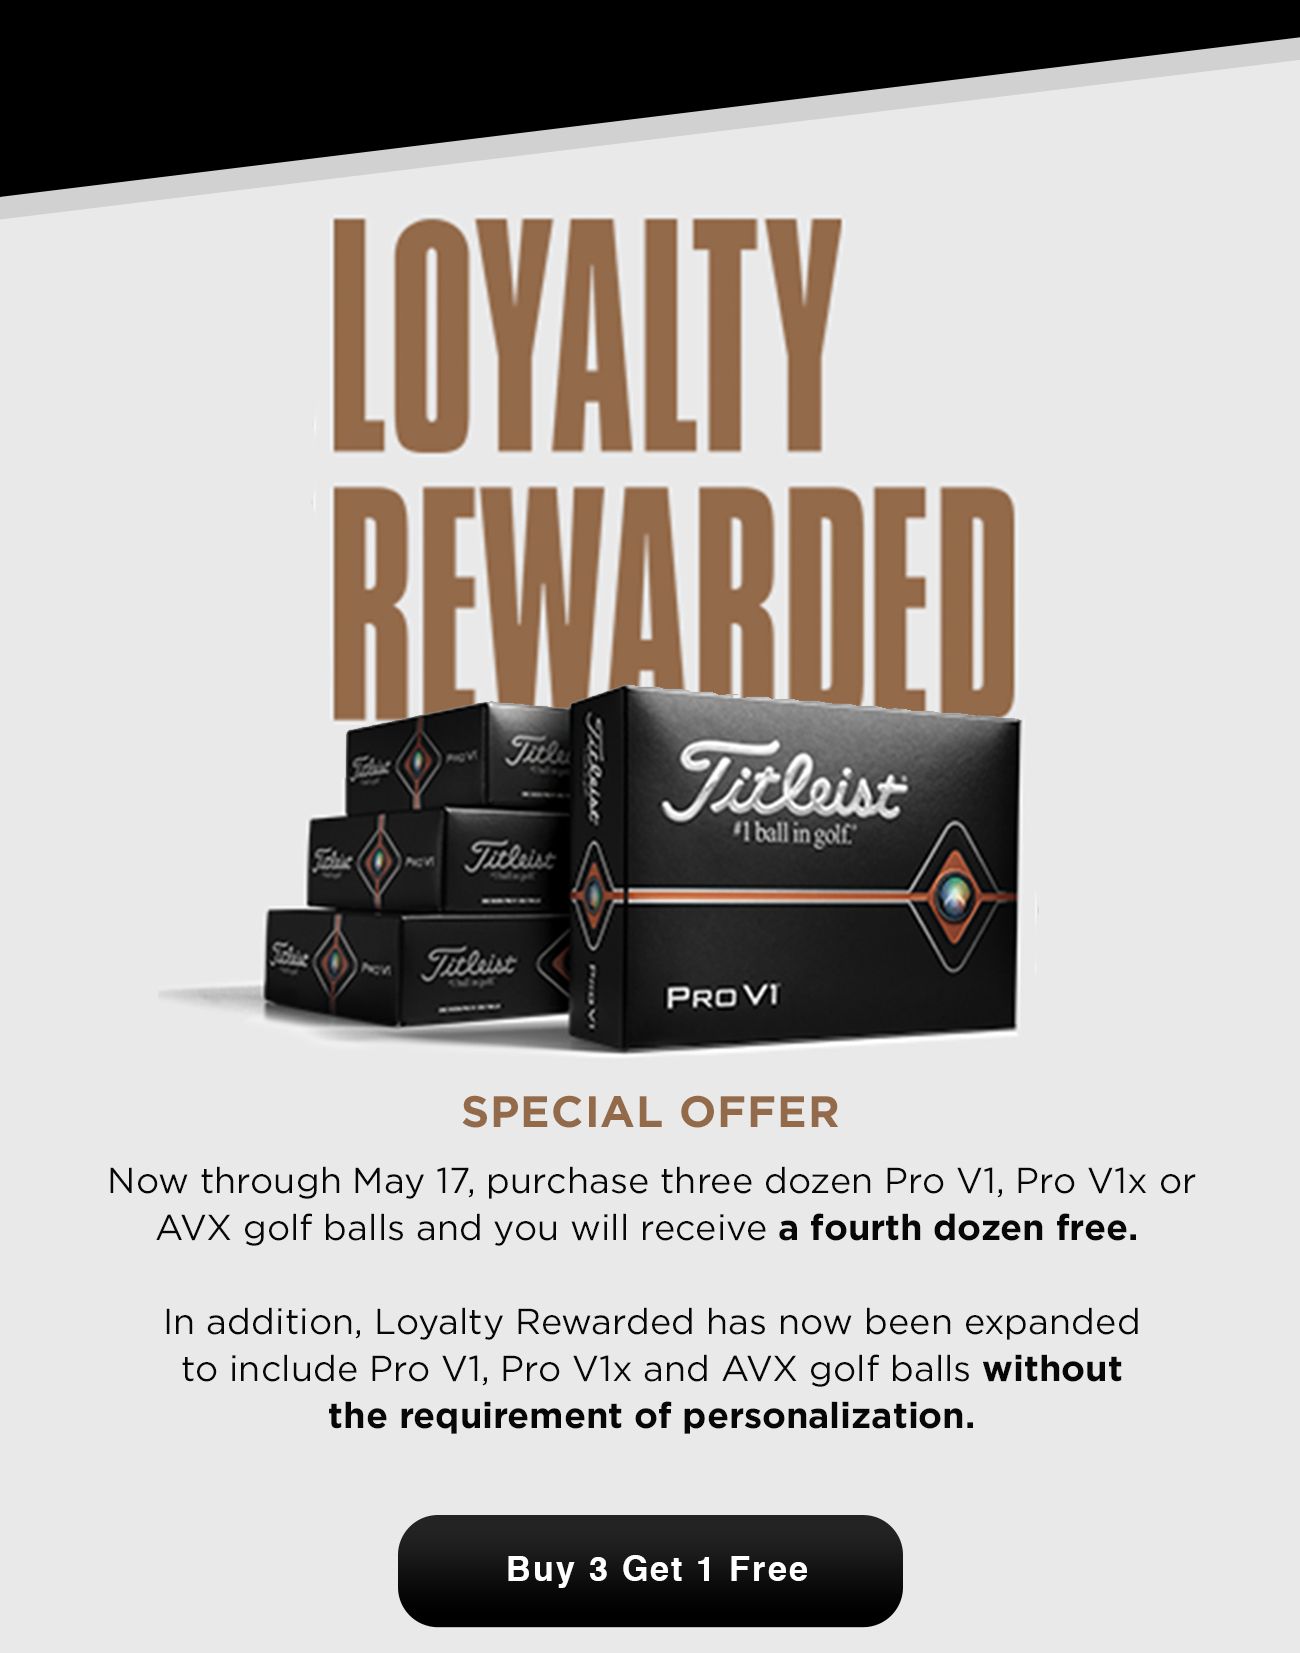 Loyalty Rewarded: Buy 3 Get 1 Free